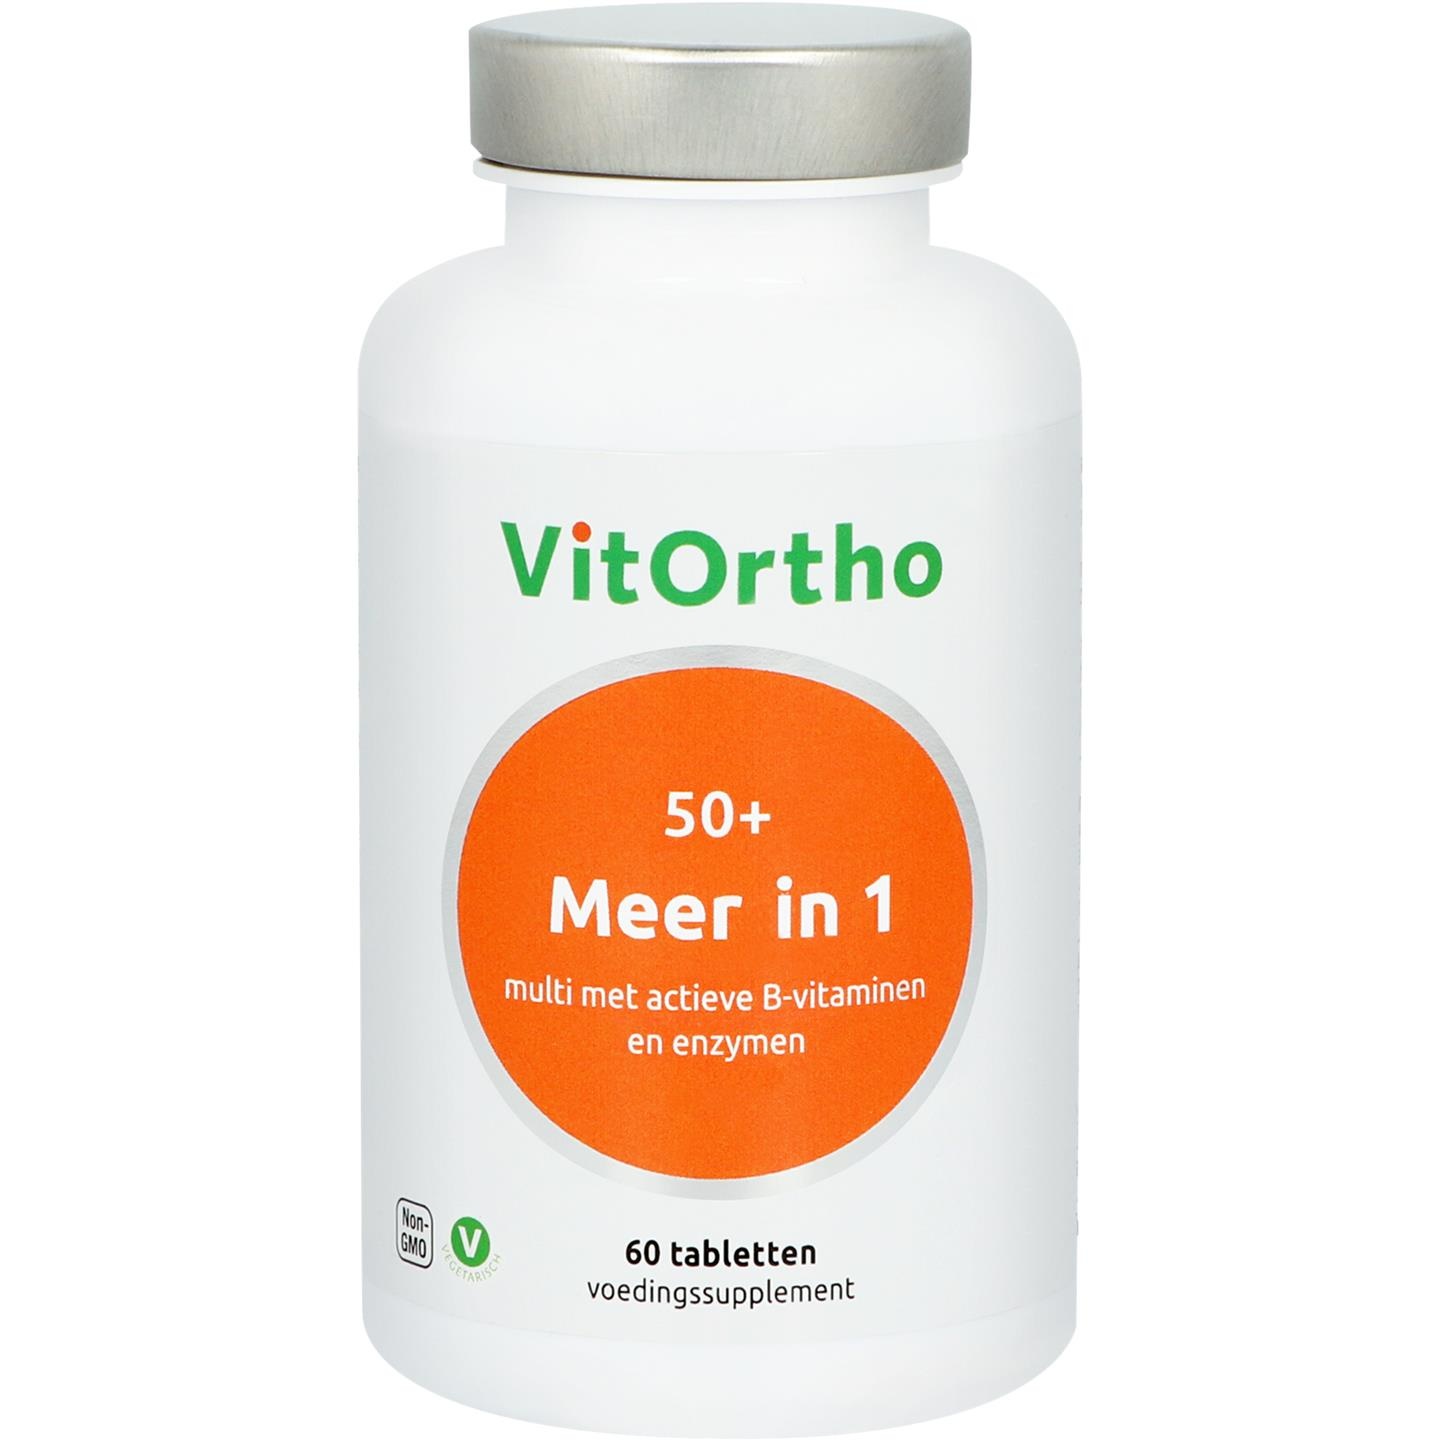 Vitortho VitOrtho Mehr in 1 50+ (60 Tabletten)